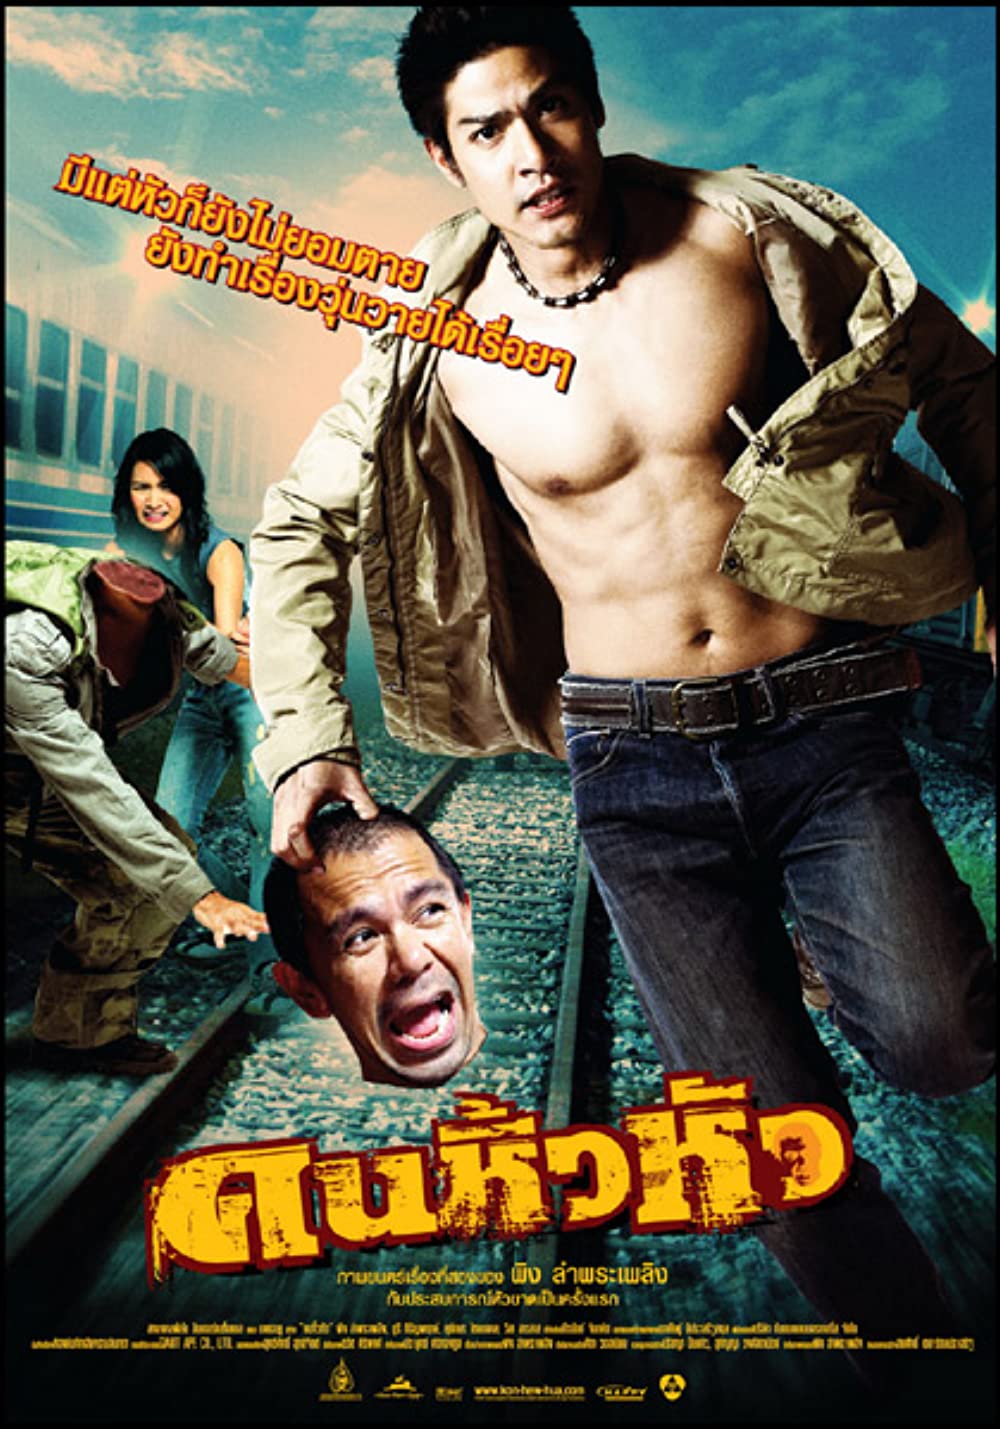 ดูหนังออนไลน์ Khon hew hua (2007) คนหิ้วหัว